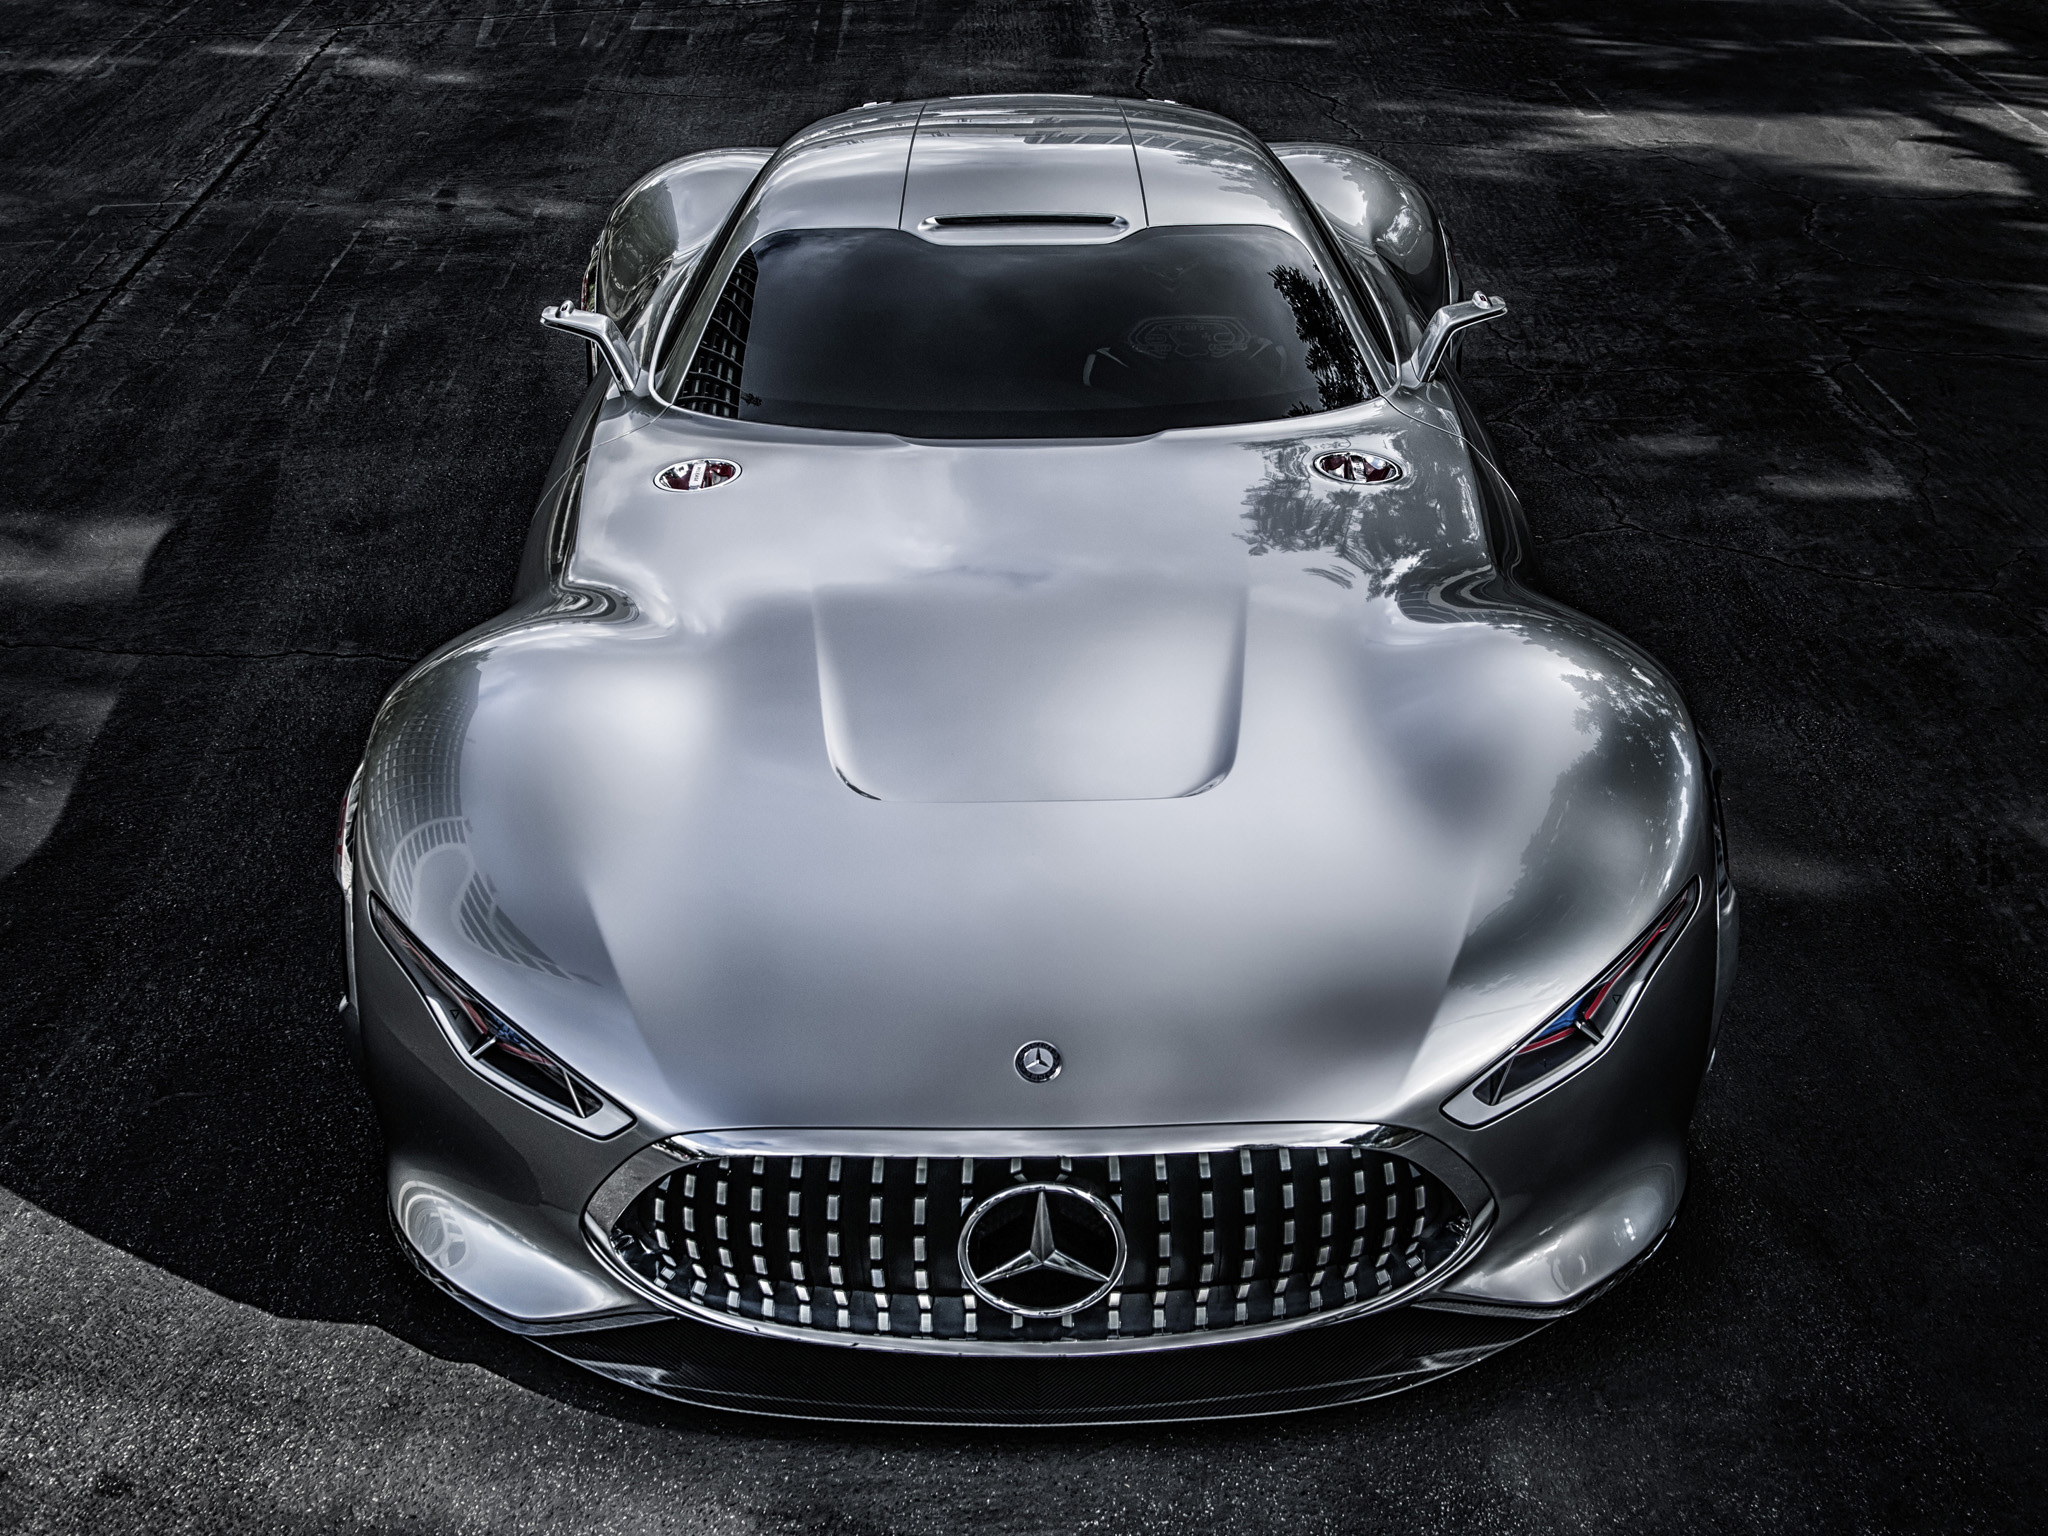 2014, Mercedes, Benz, Amg, Vision, Gran, Turismo, Concept, Supercar Wallpaper